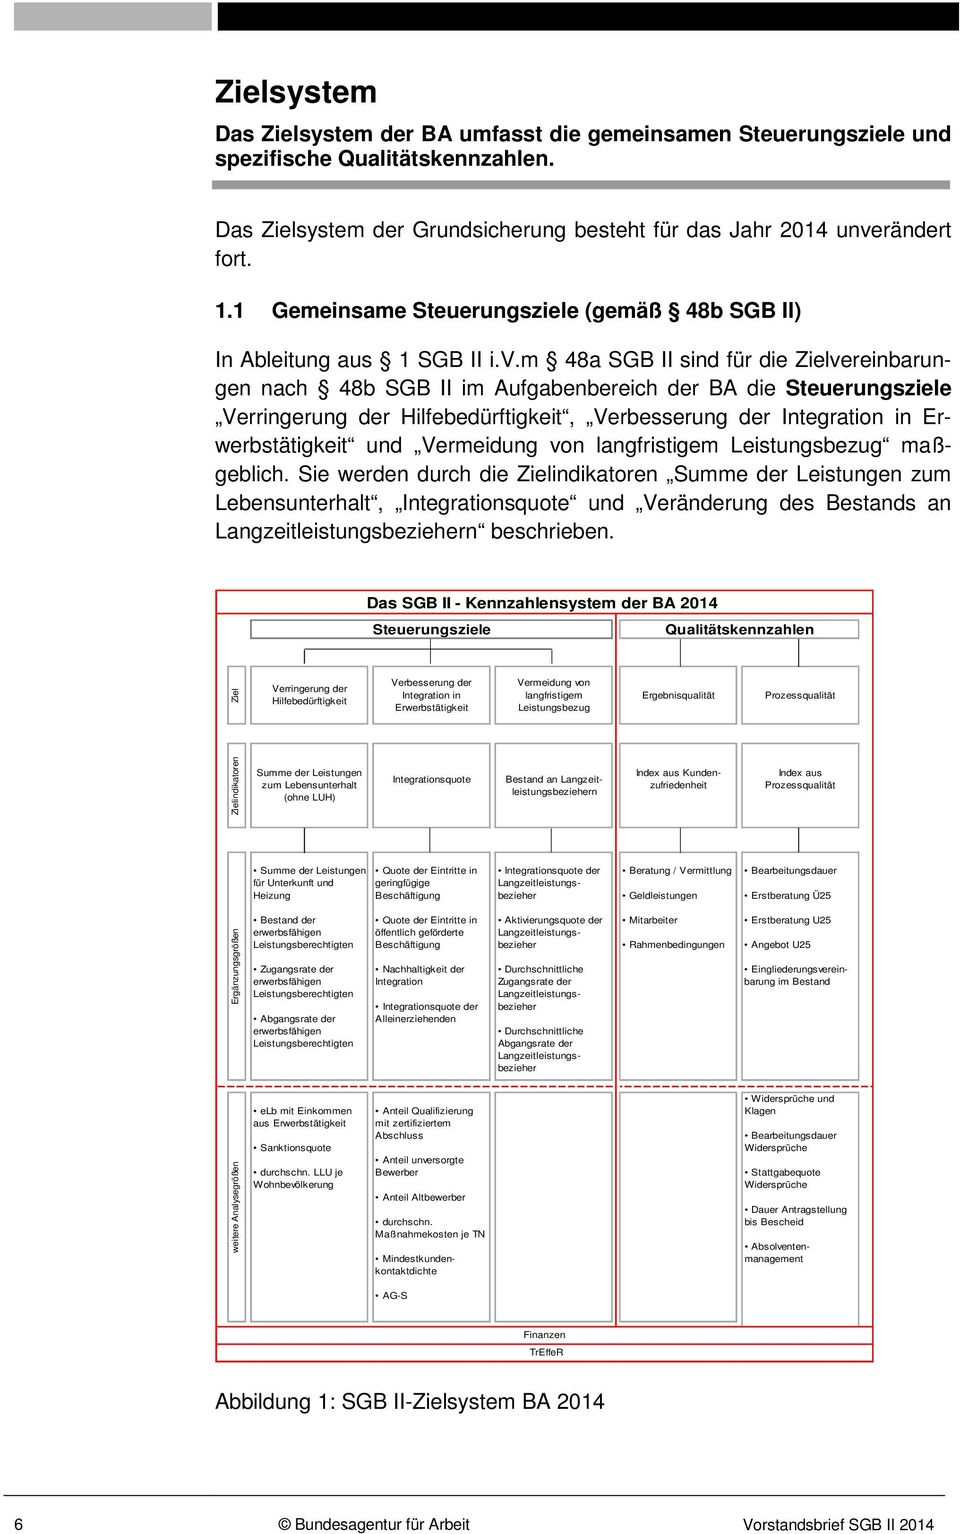 m 48a SGB II sind für die Zielvereinbarungen nach 48b SGB II im Aufgabenbereich der BA die Steuerungsziele Verringerung der Hilfebedürftigkeit, Verbesserung der Integration in Erwerbstätigkeit und